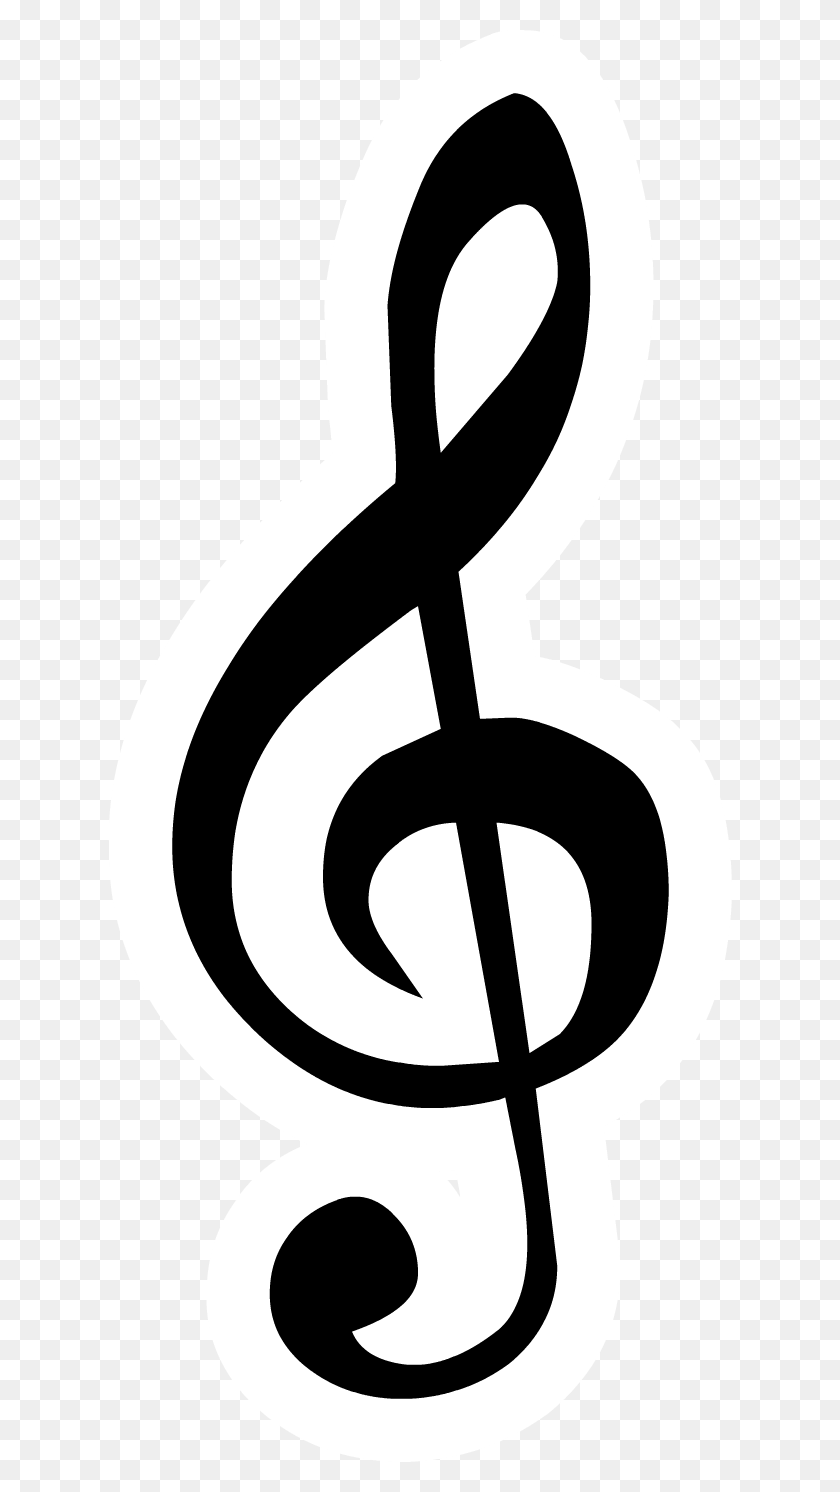 624x1432 Без Названия Относительно Имен Символов Музыкальной Ноты - Клипарт С Символом Музыкальной Ноты